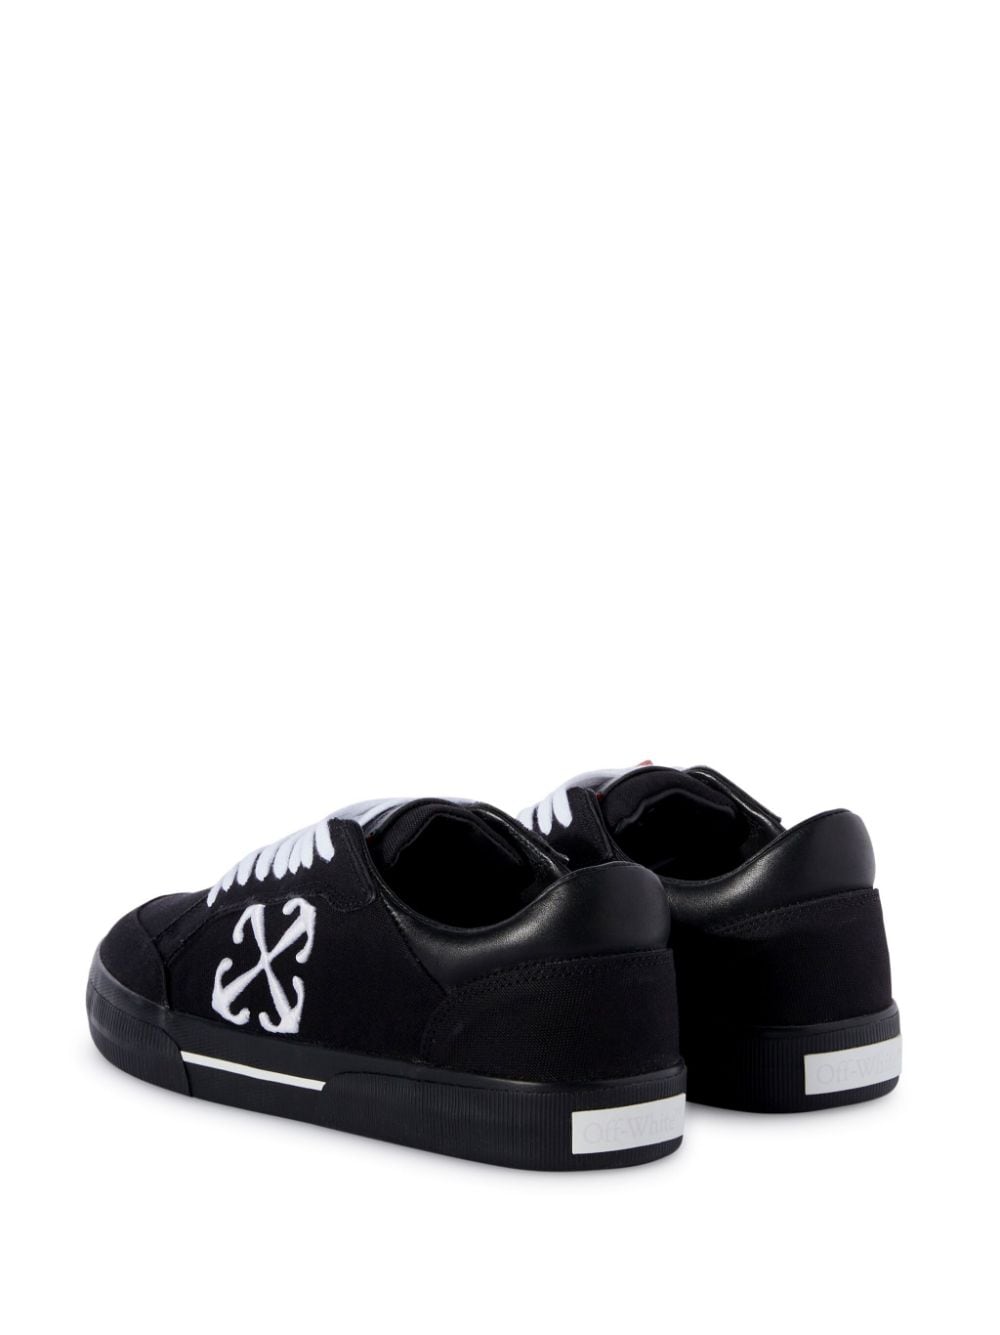 Sneaker in tela vulcanizzata con etichetta a contrasto<br><br><br>